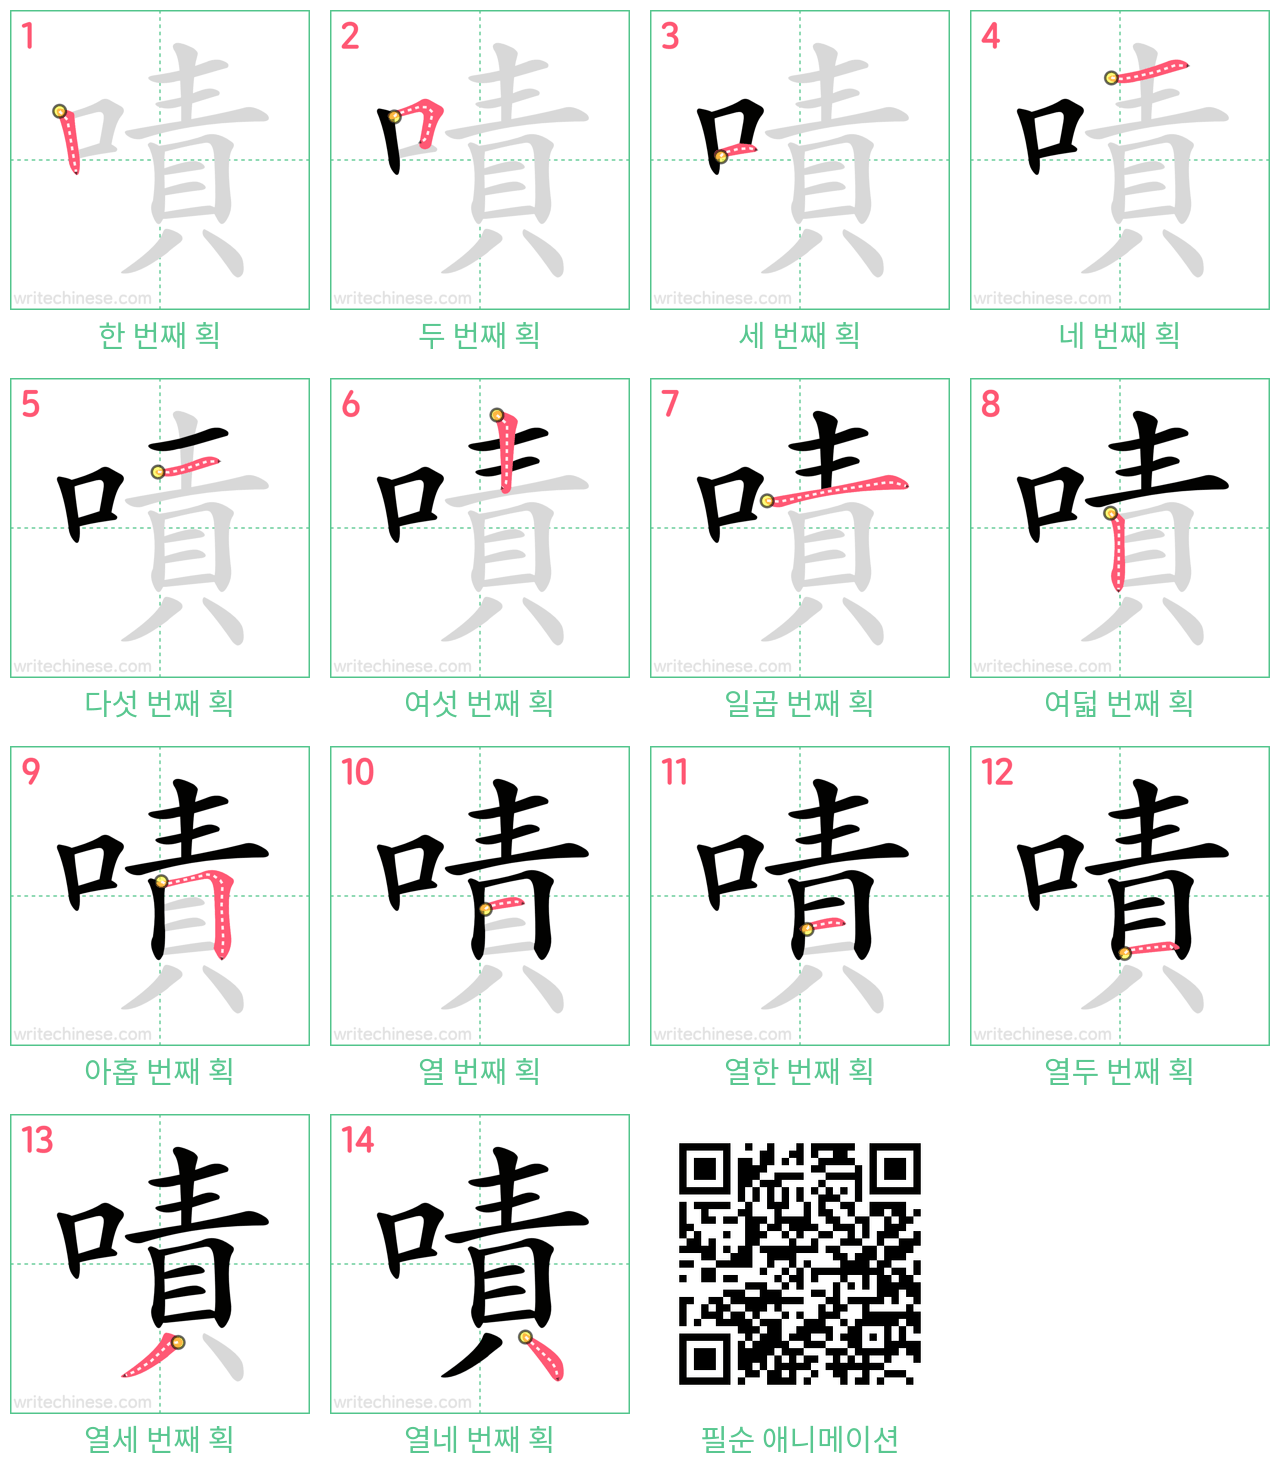 嘖 step-by-step stroke order diagrams